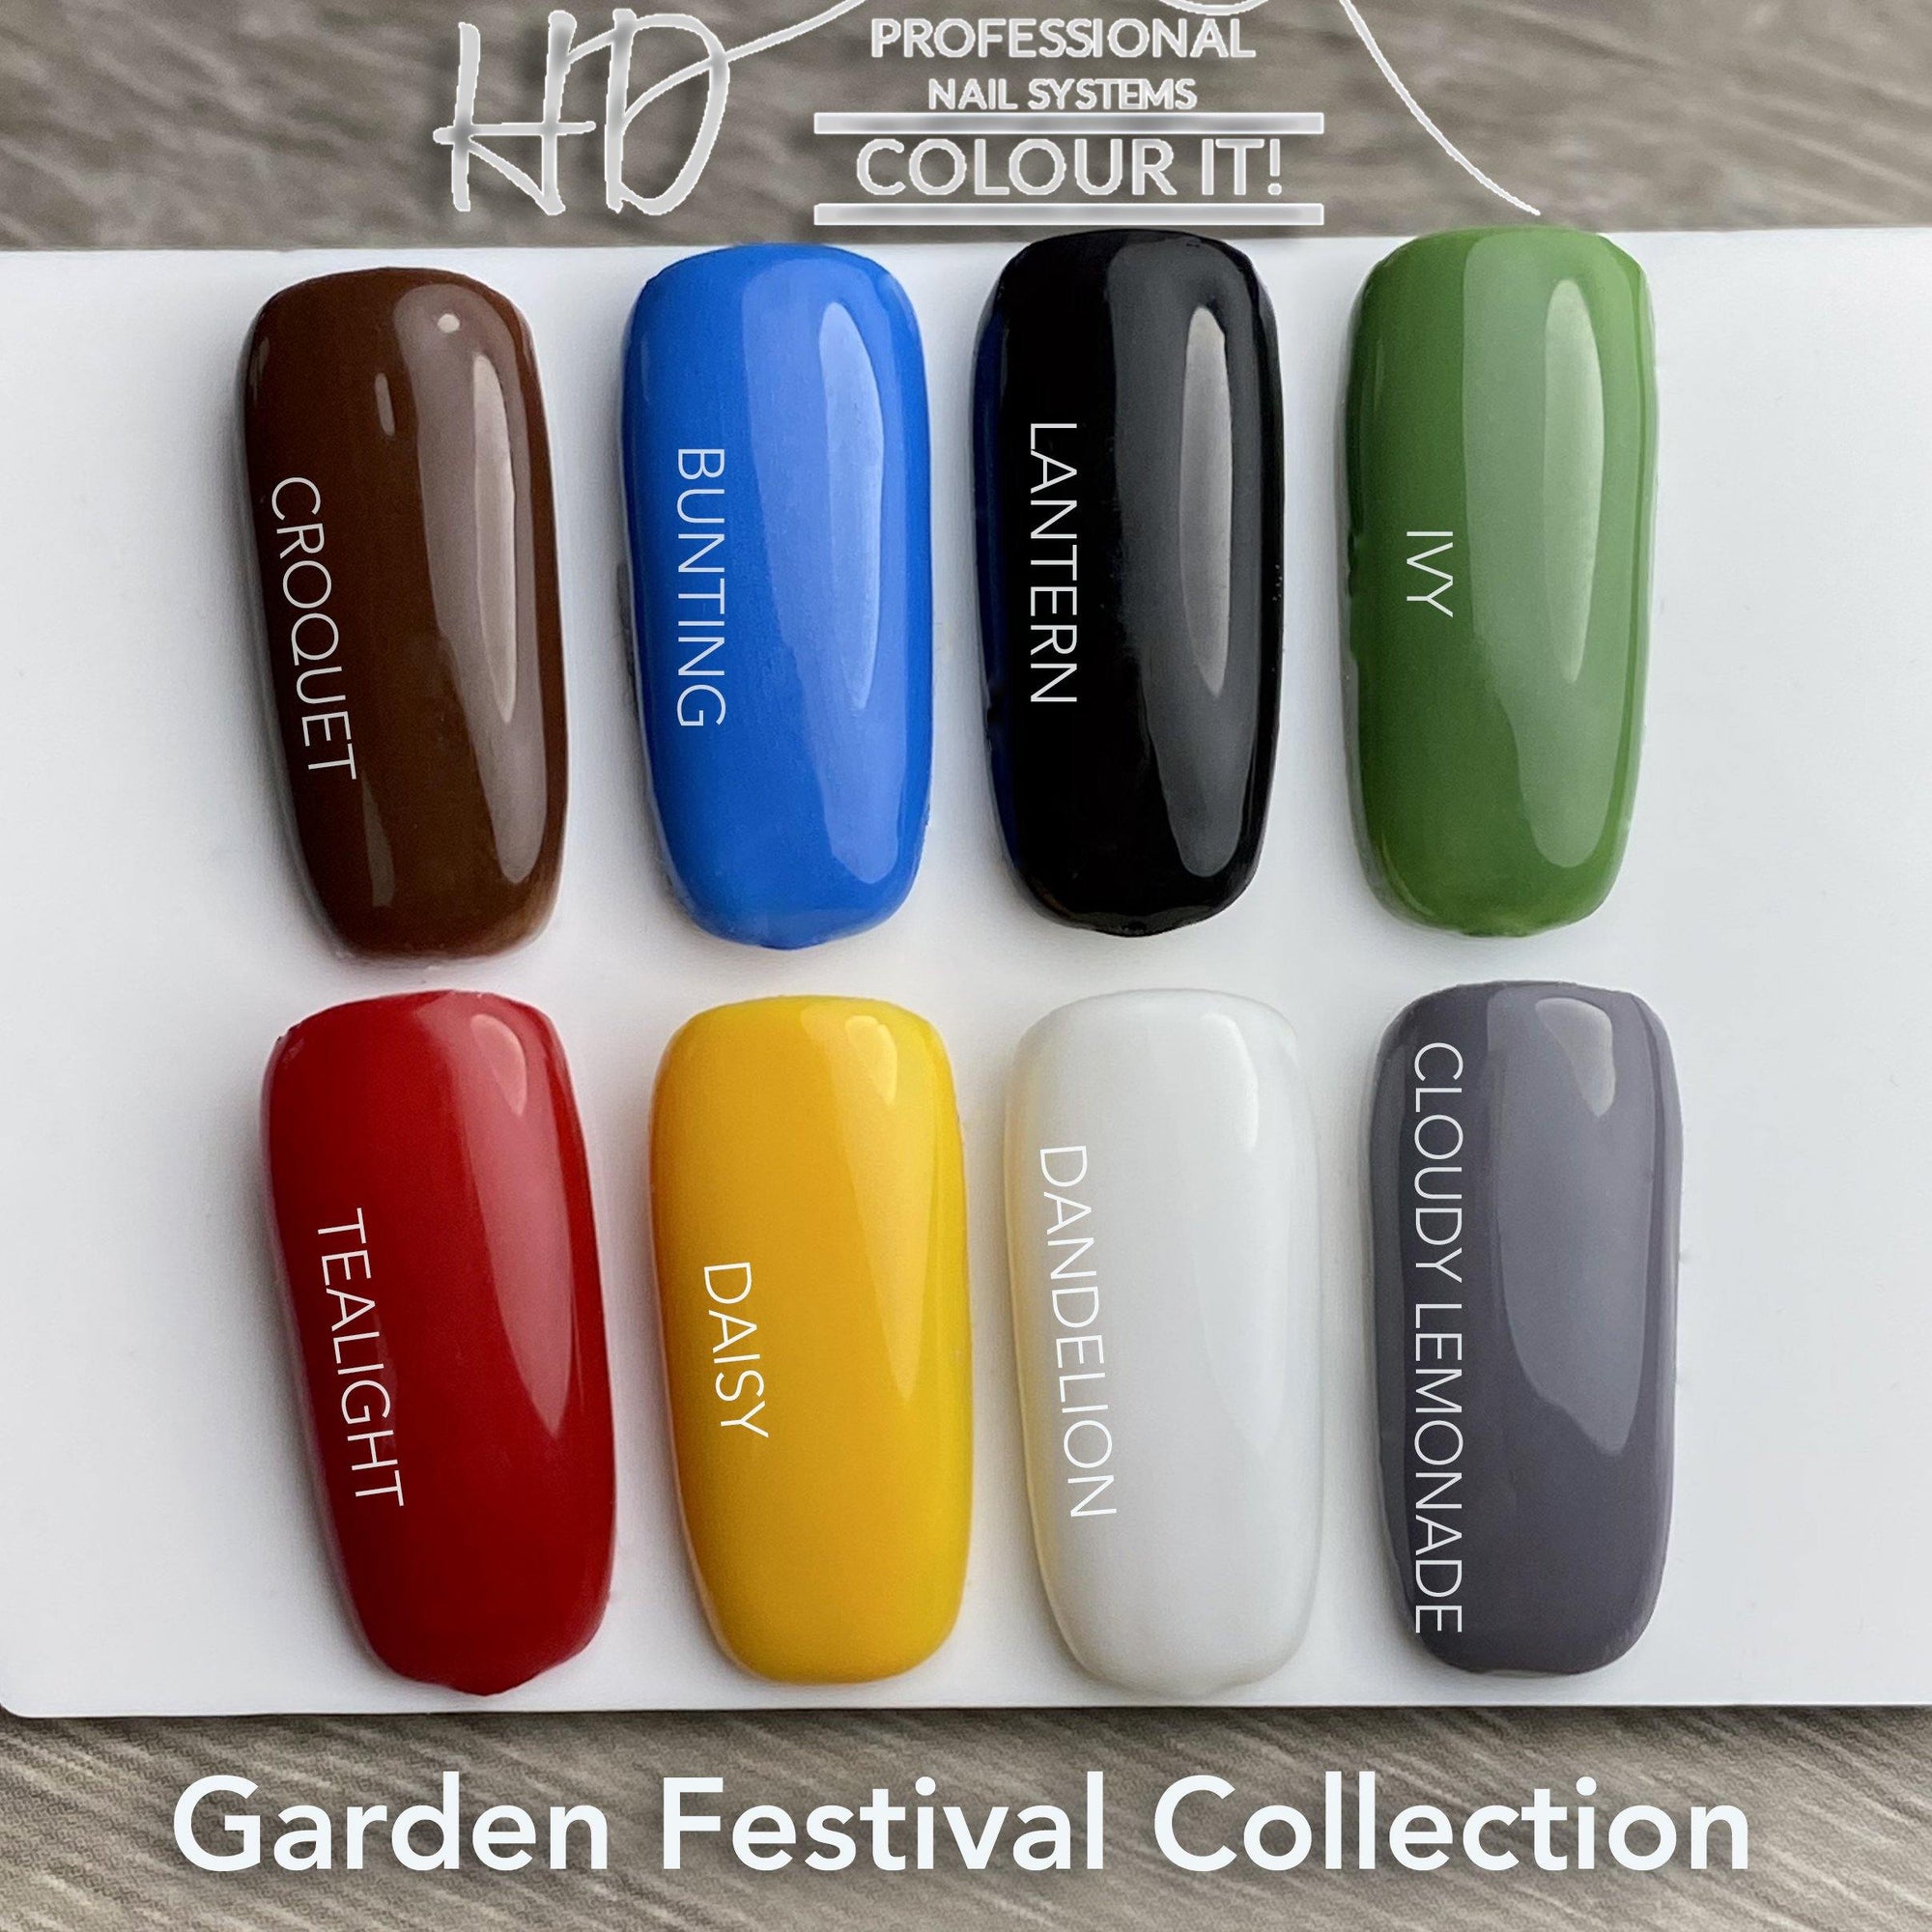 HD Colour It! Garden Festival Collection (all 8 colors 15ml) - Gel Essentialz